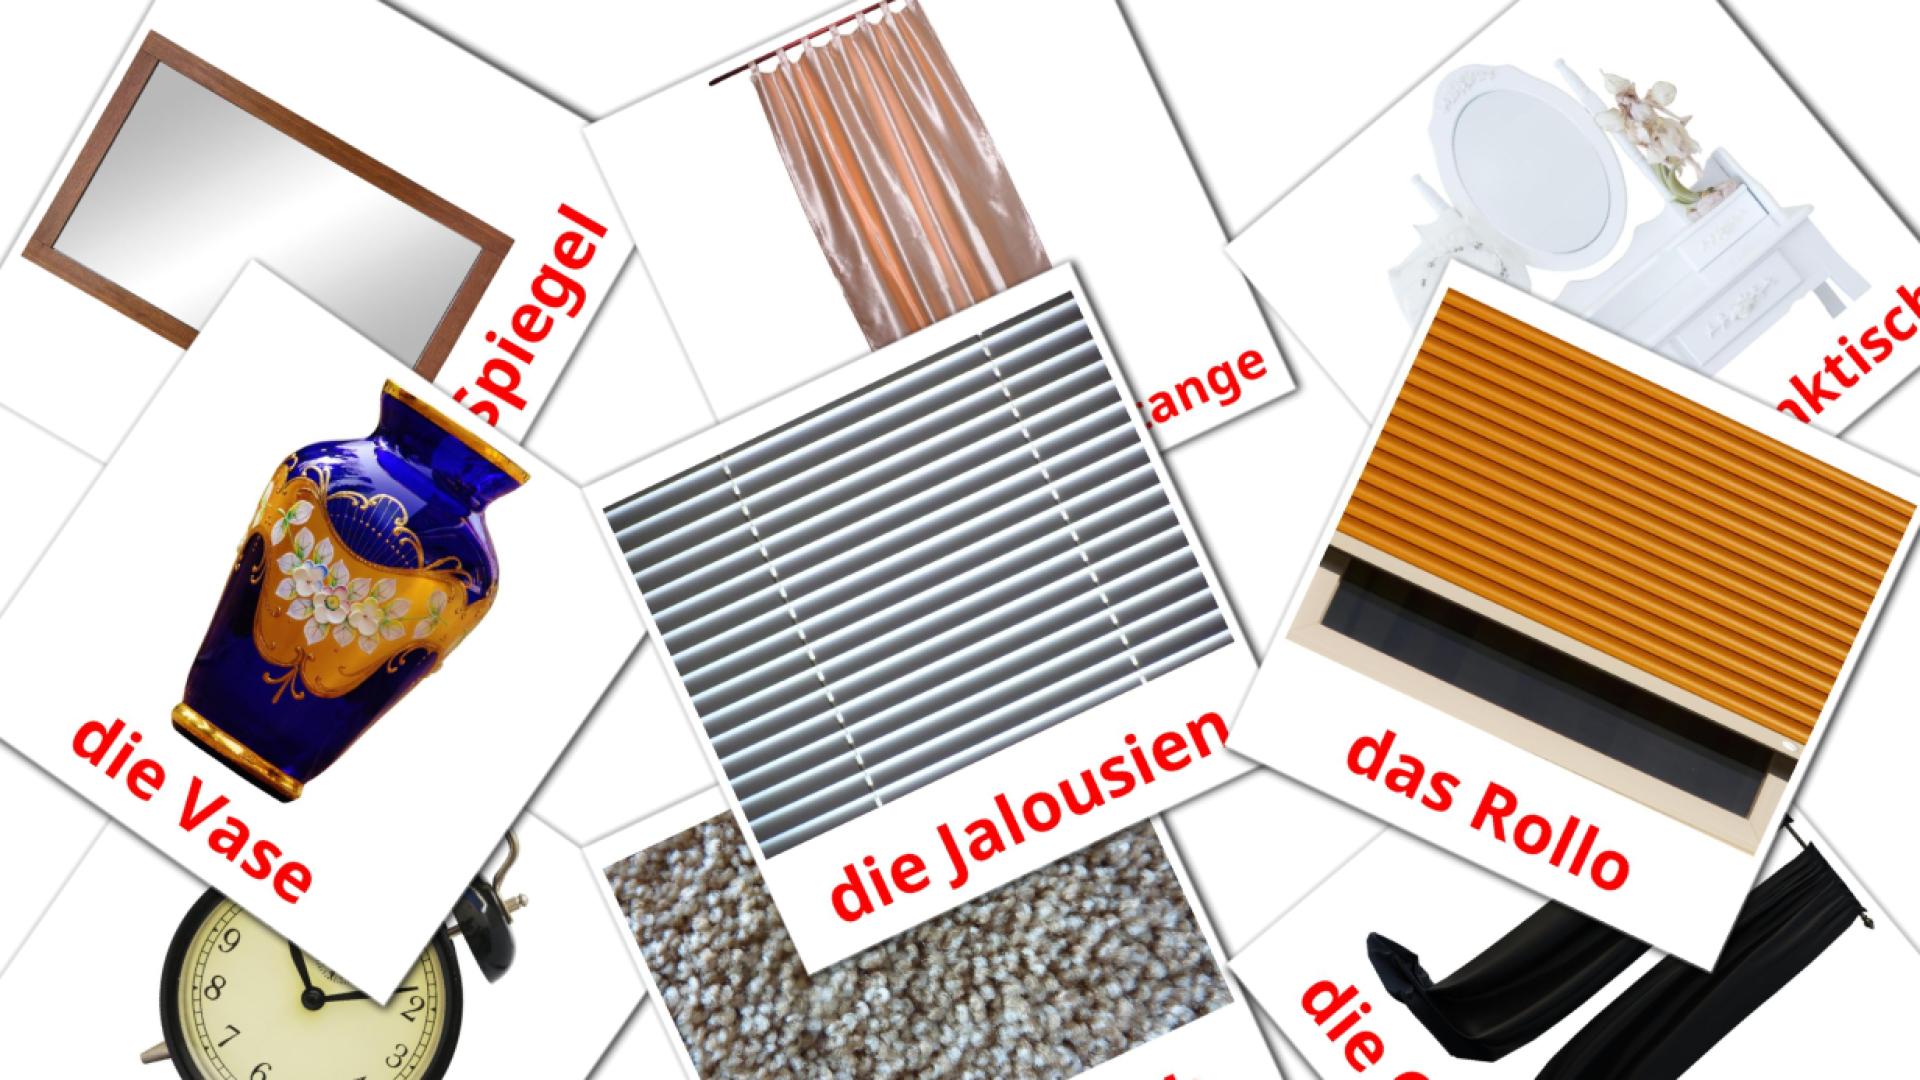 Accesorios de Dormitorio - tarjetas de vocabulario en alemán